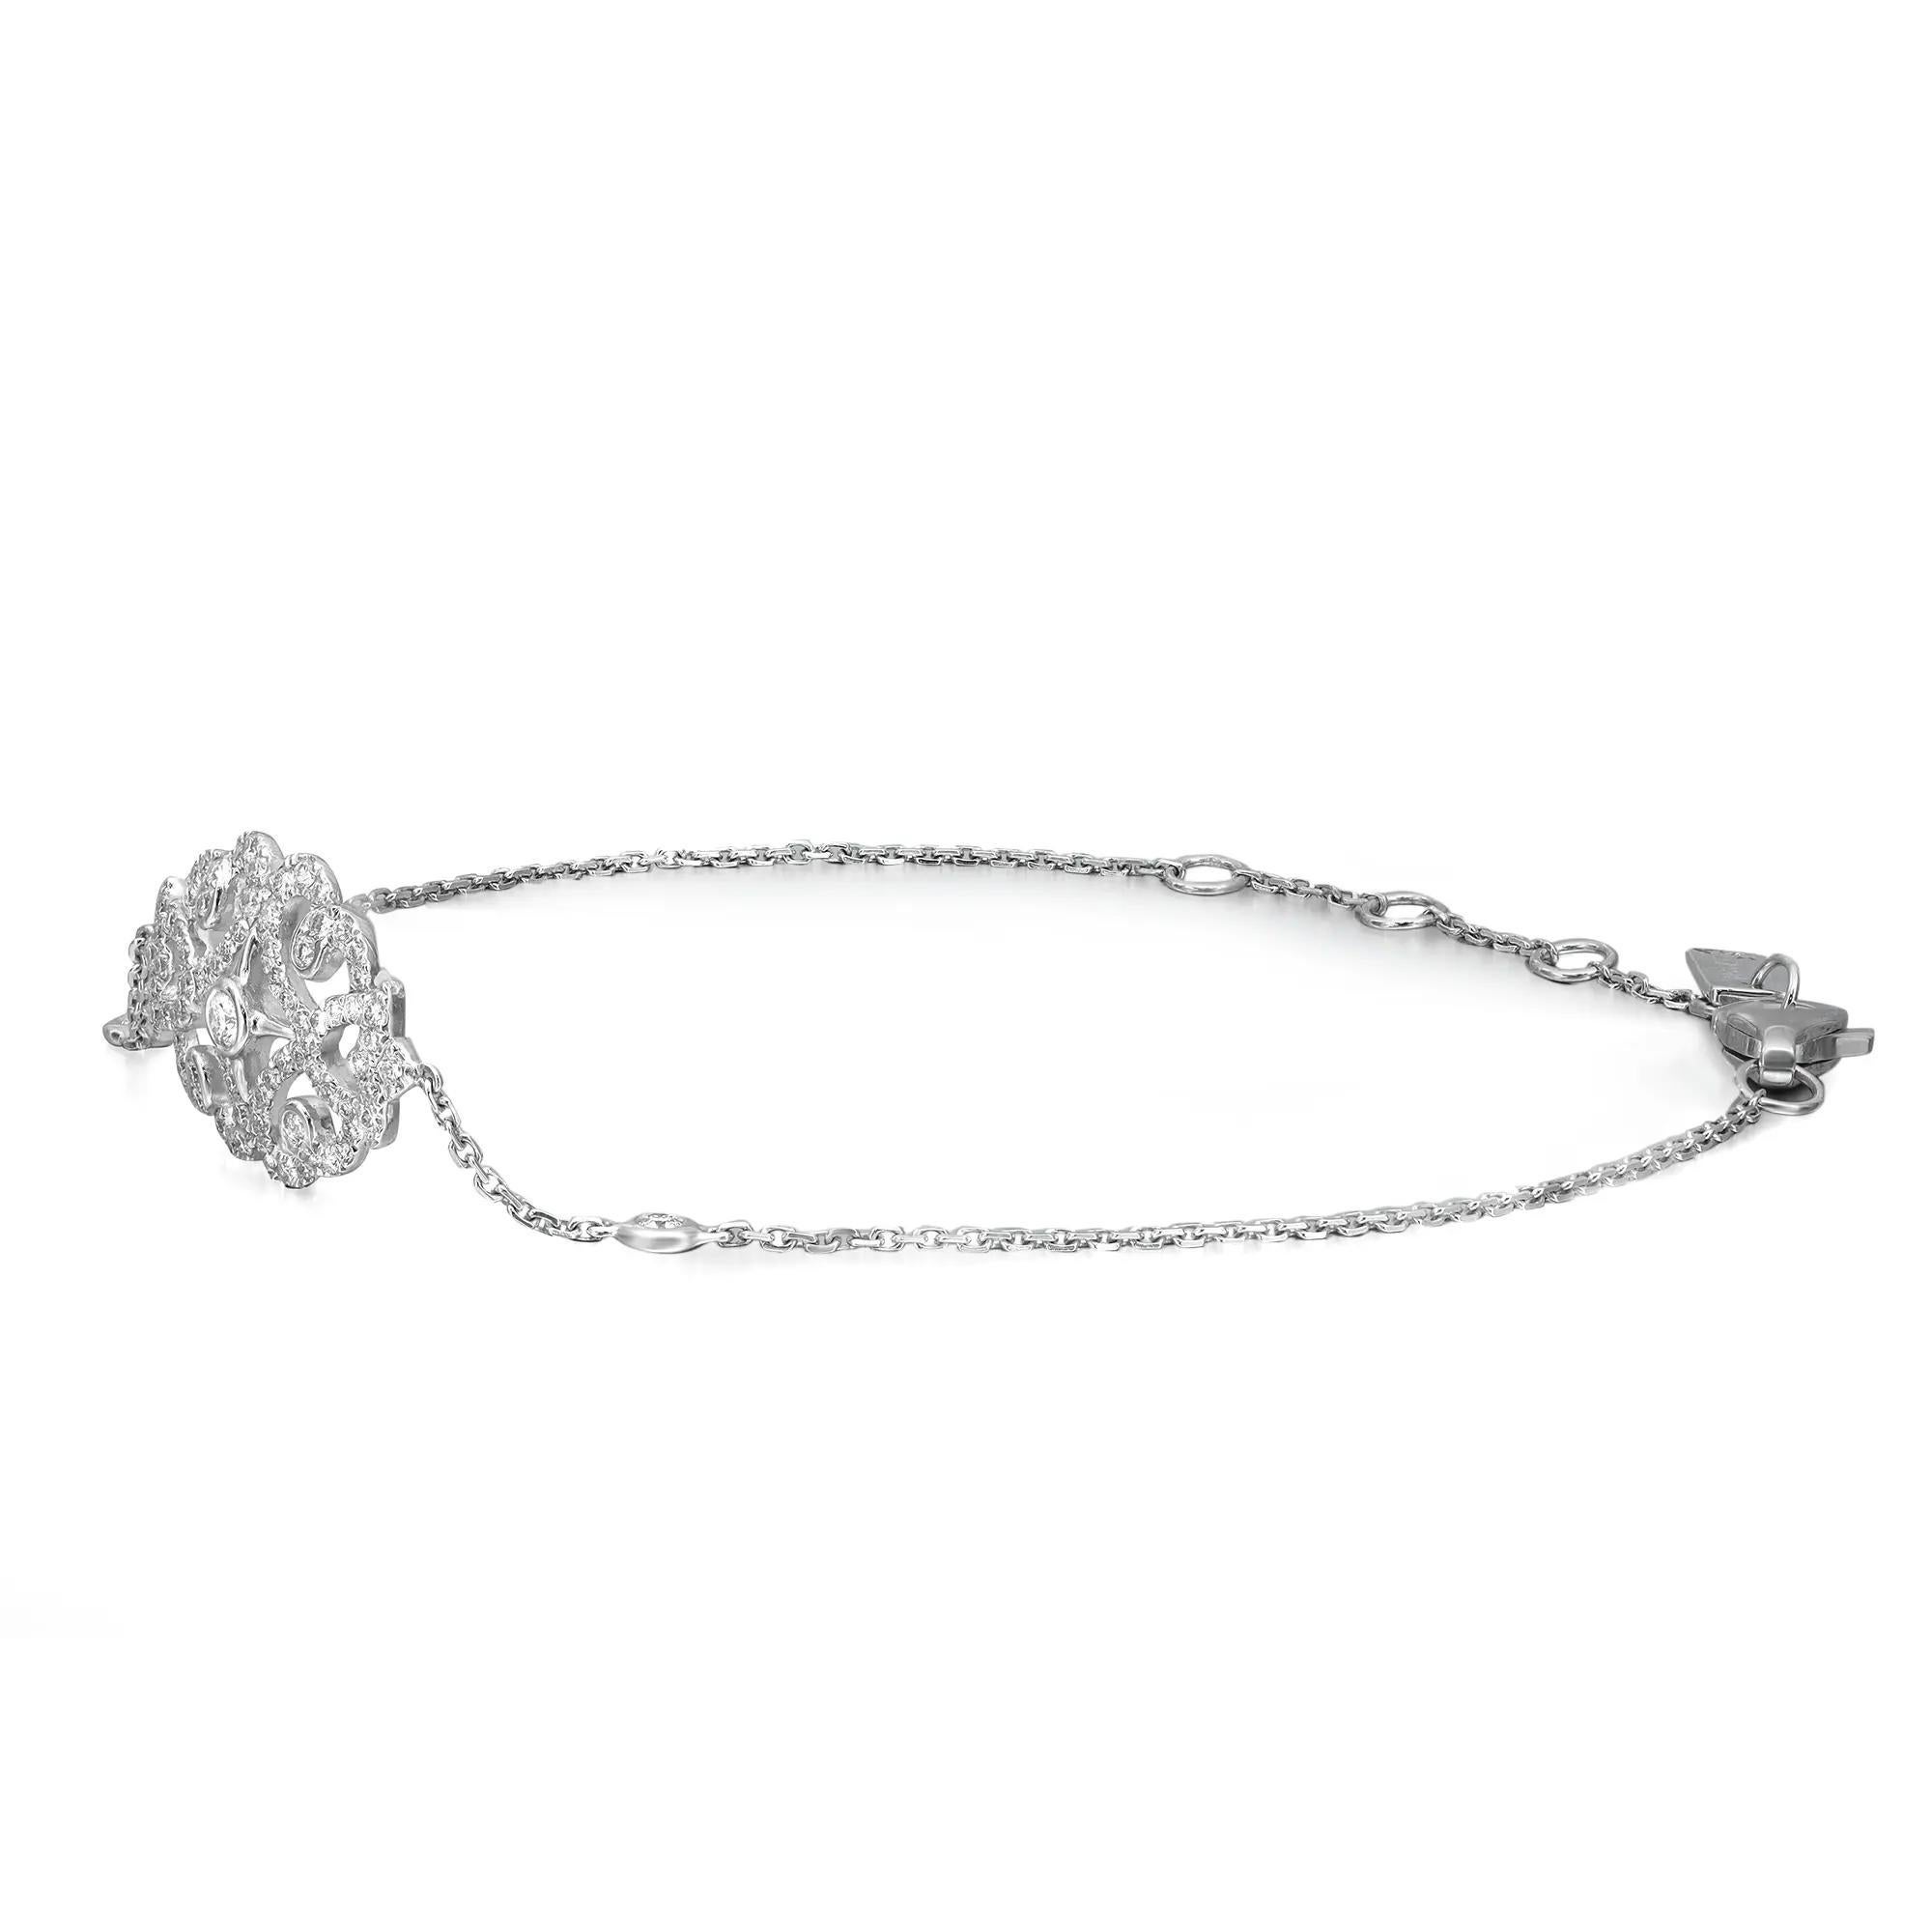 Obtenez un look quotidien parfait et éblouissant avec ce magnifique bracelet à chaîne en apesanteur de la collection Messika Sultane. Whiting en or blanc 18 carats poli. Il est empilable et facile à combiner. Ce bracelet présente un motif floral